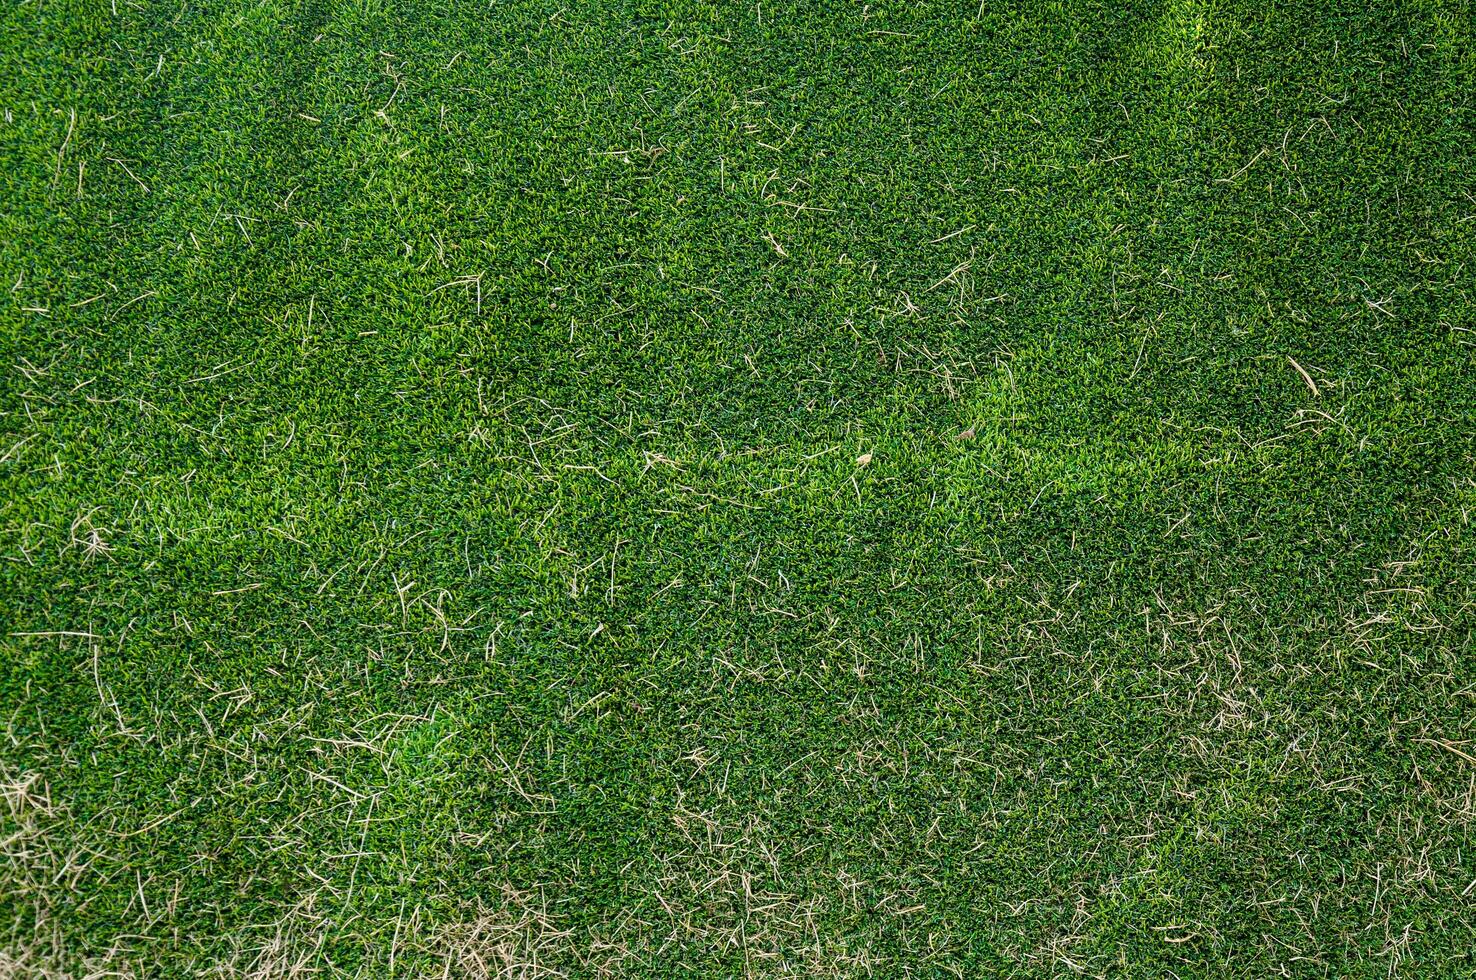 künstlich Grün Gras und trocken Gras zum Hintergrund foto